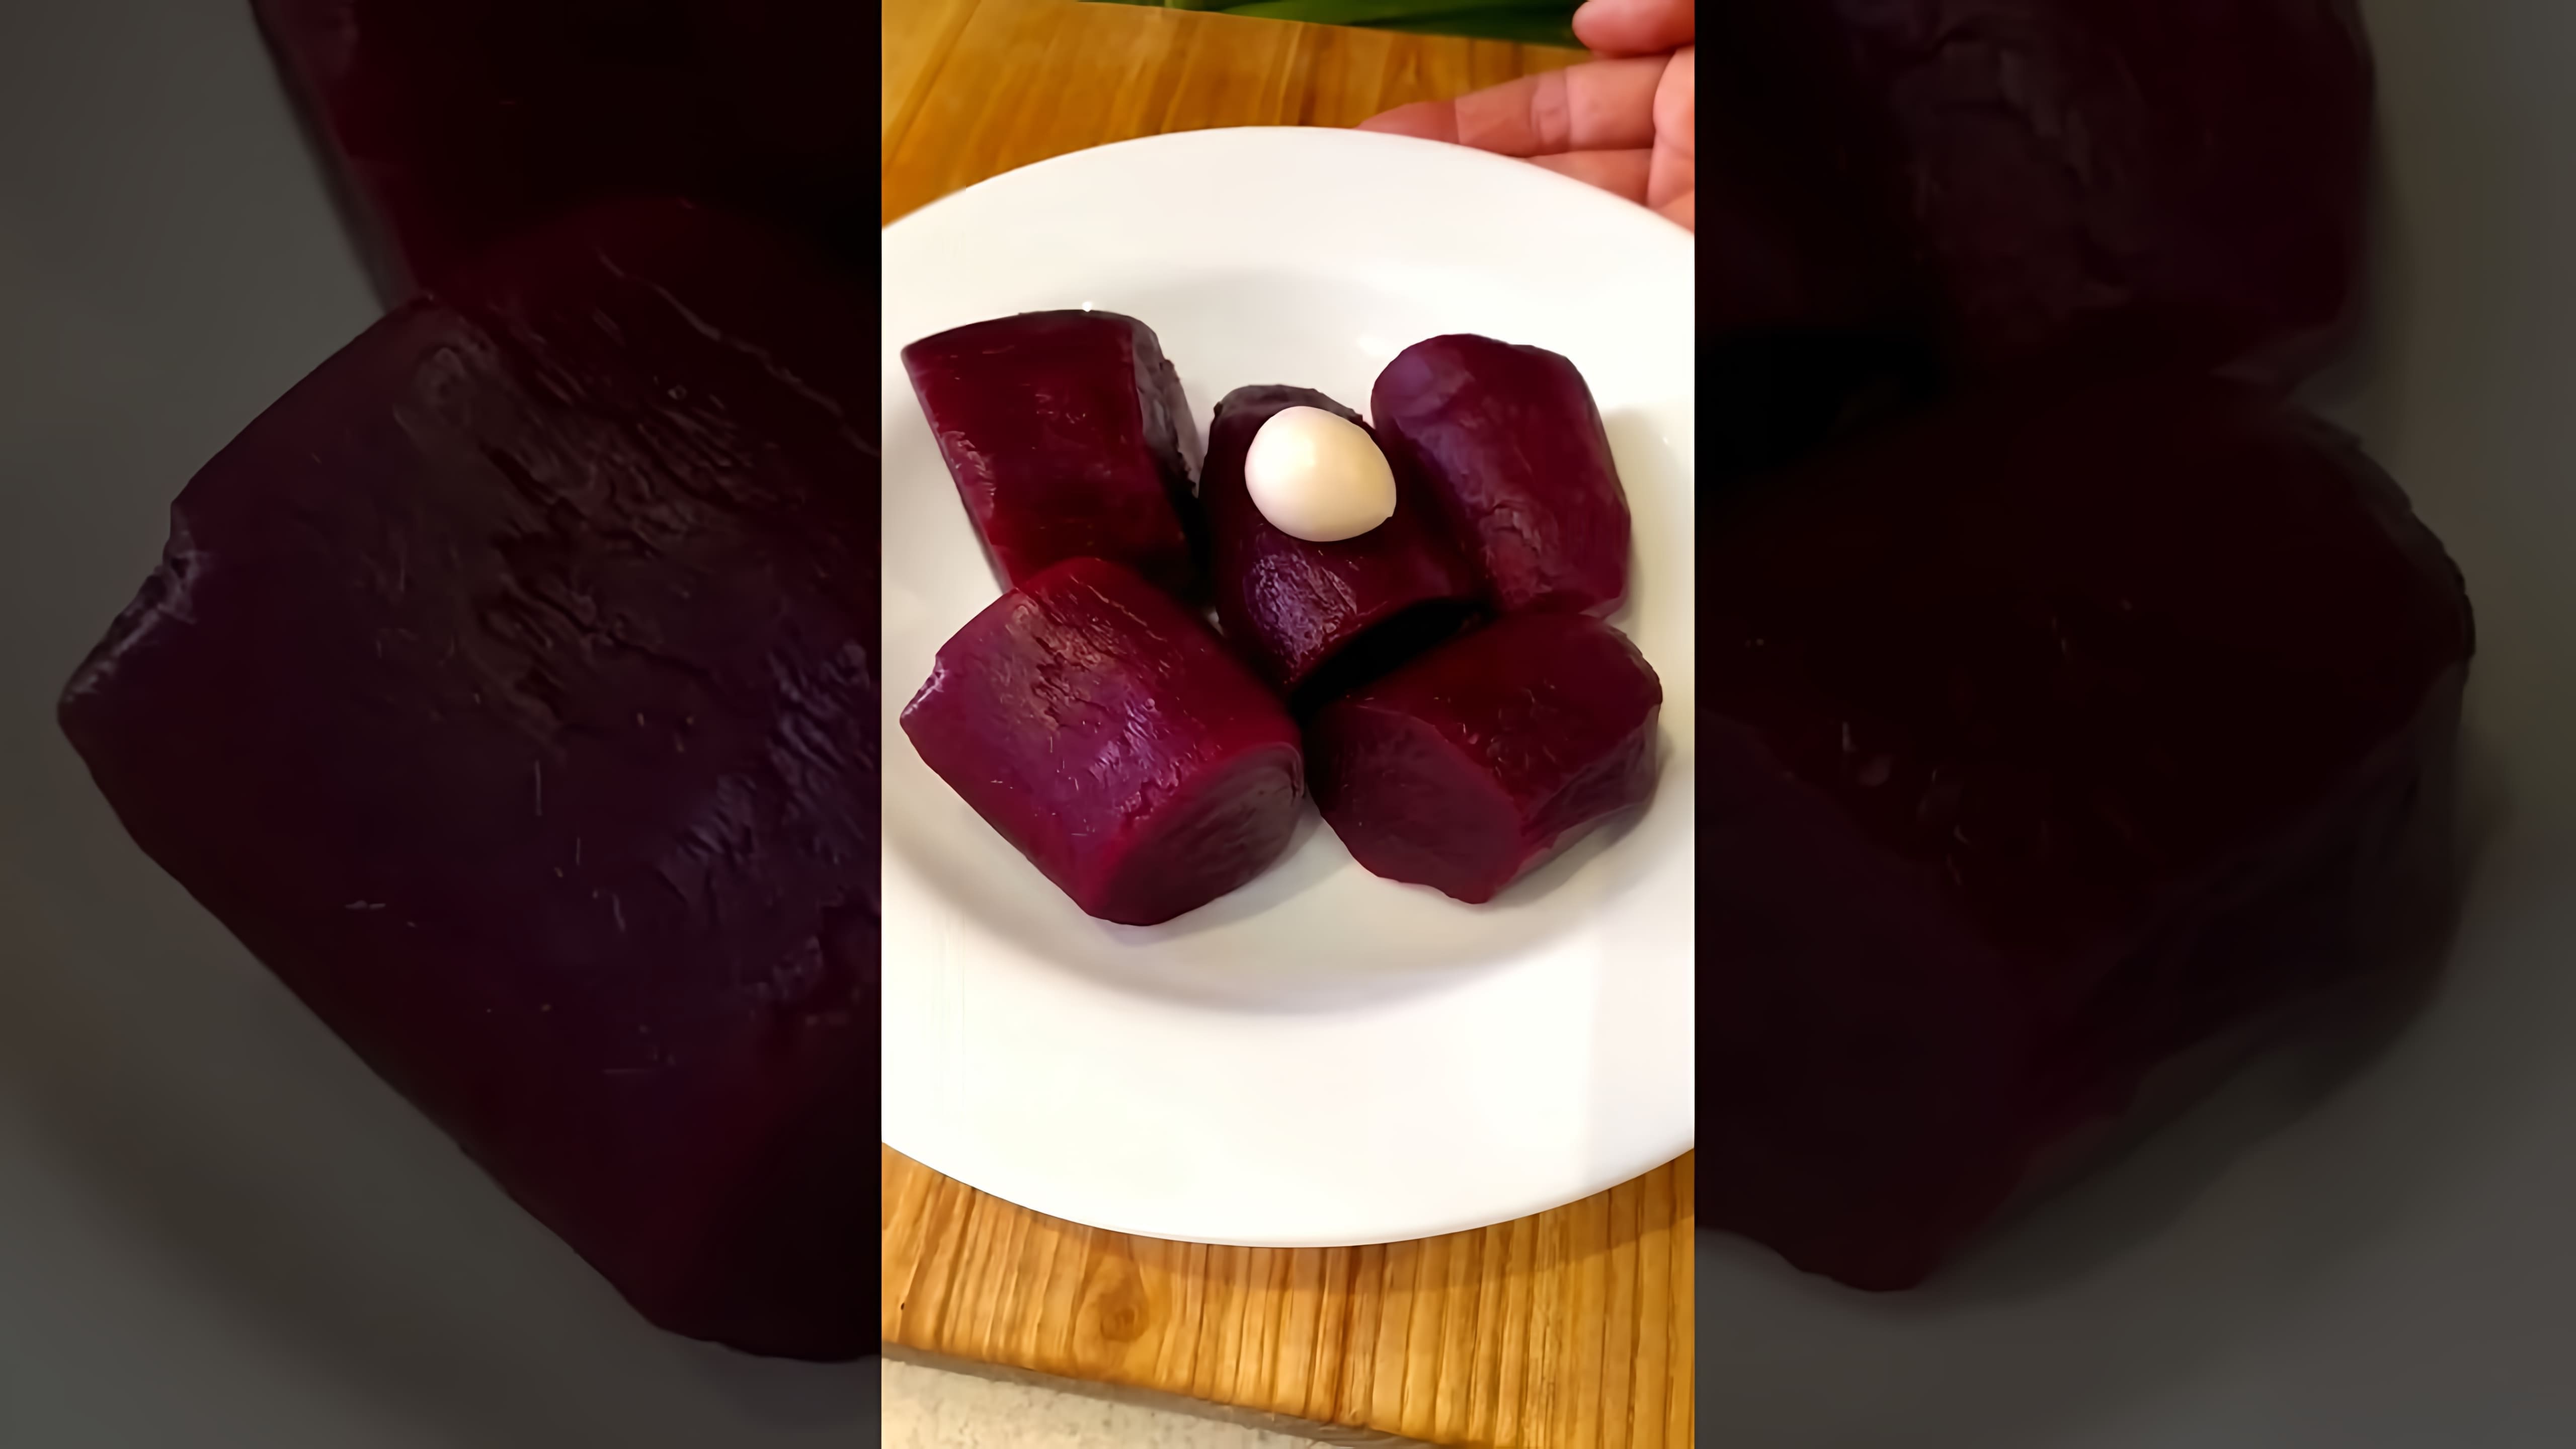 В этом видео демонстрируется рецепт салата "Селедка под шубой", но без использования картофеля